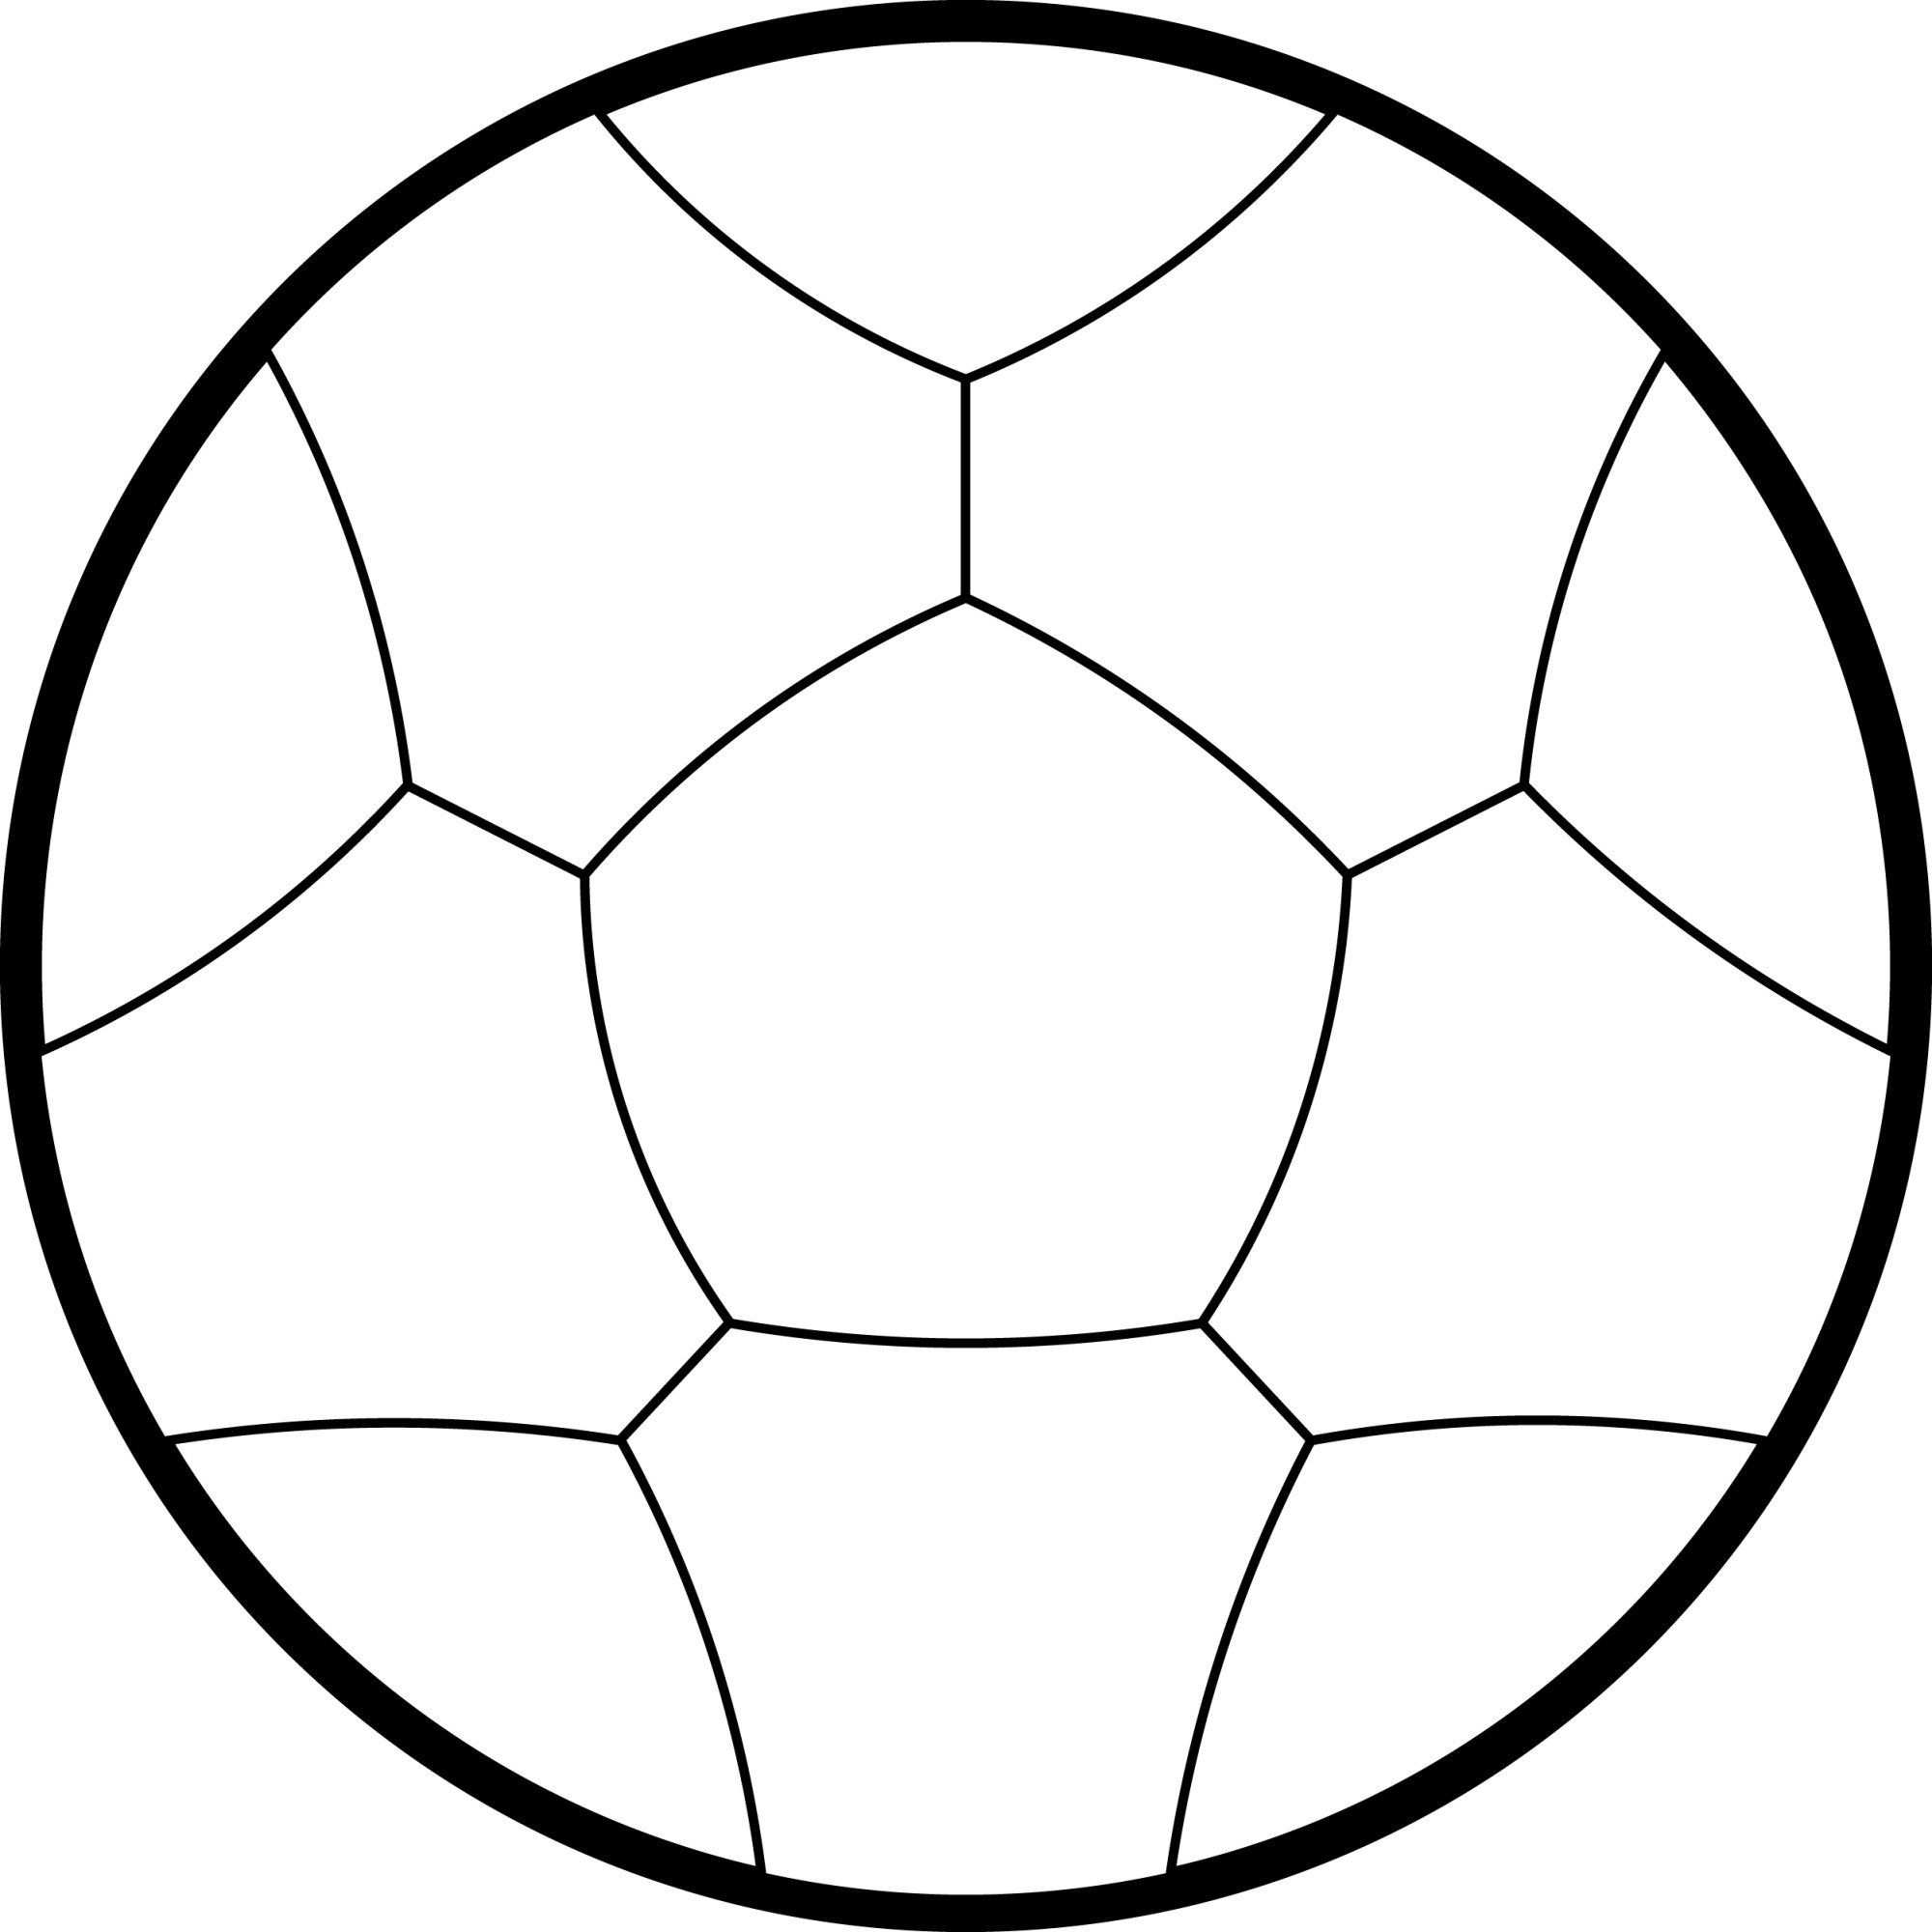 Раскраска для детей: игрушка футбольный мяч